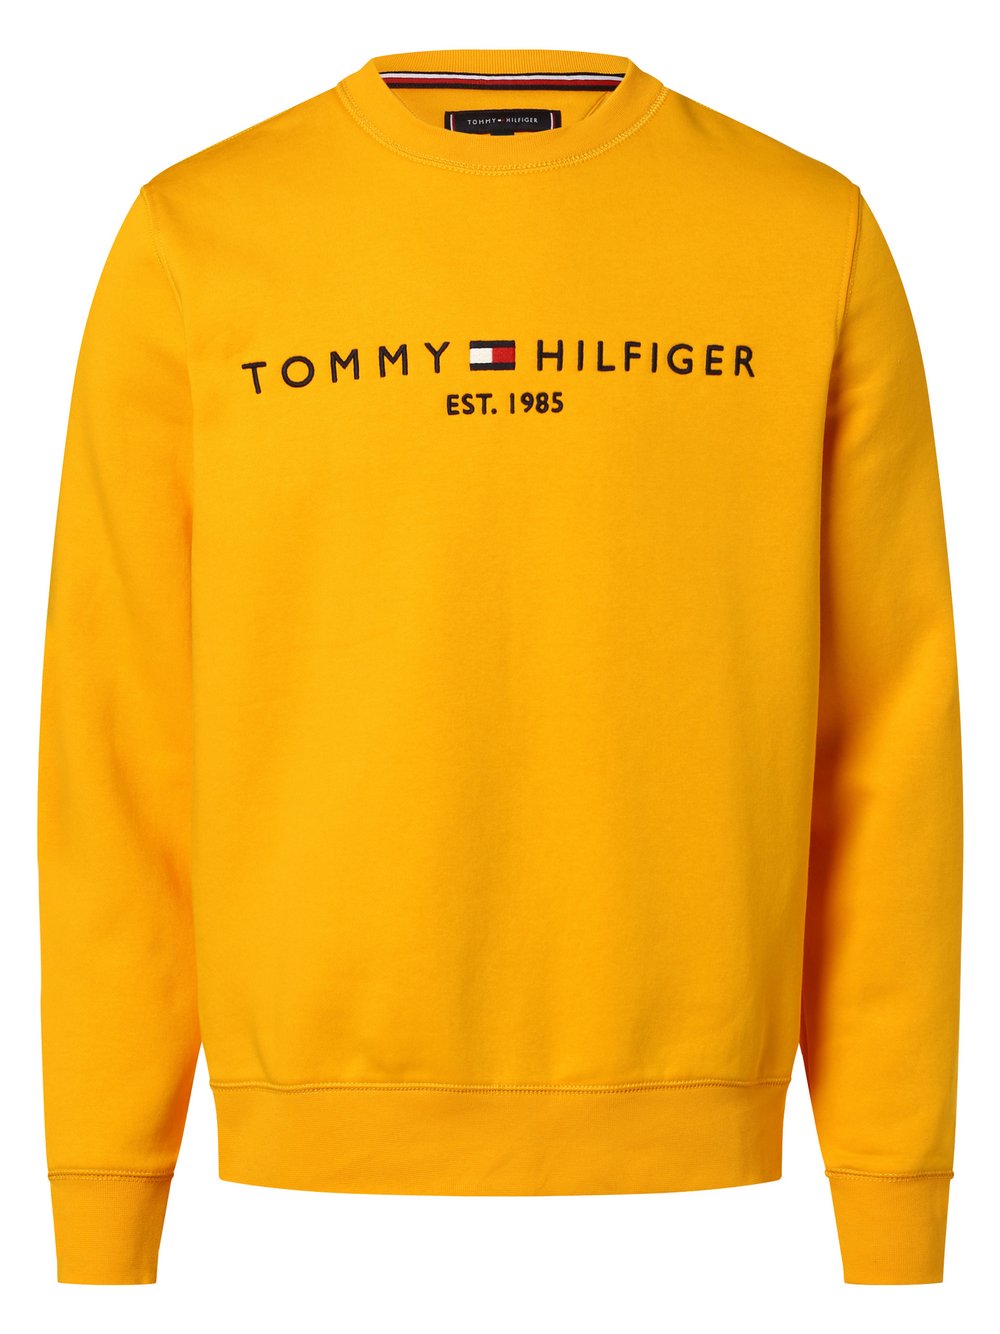 Tommy Hilfiger - Męska bluza nierozpinana, żółty